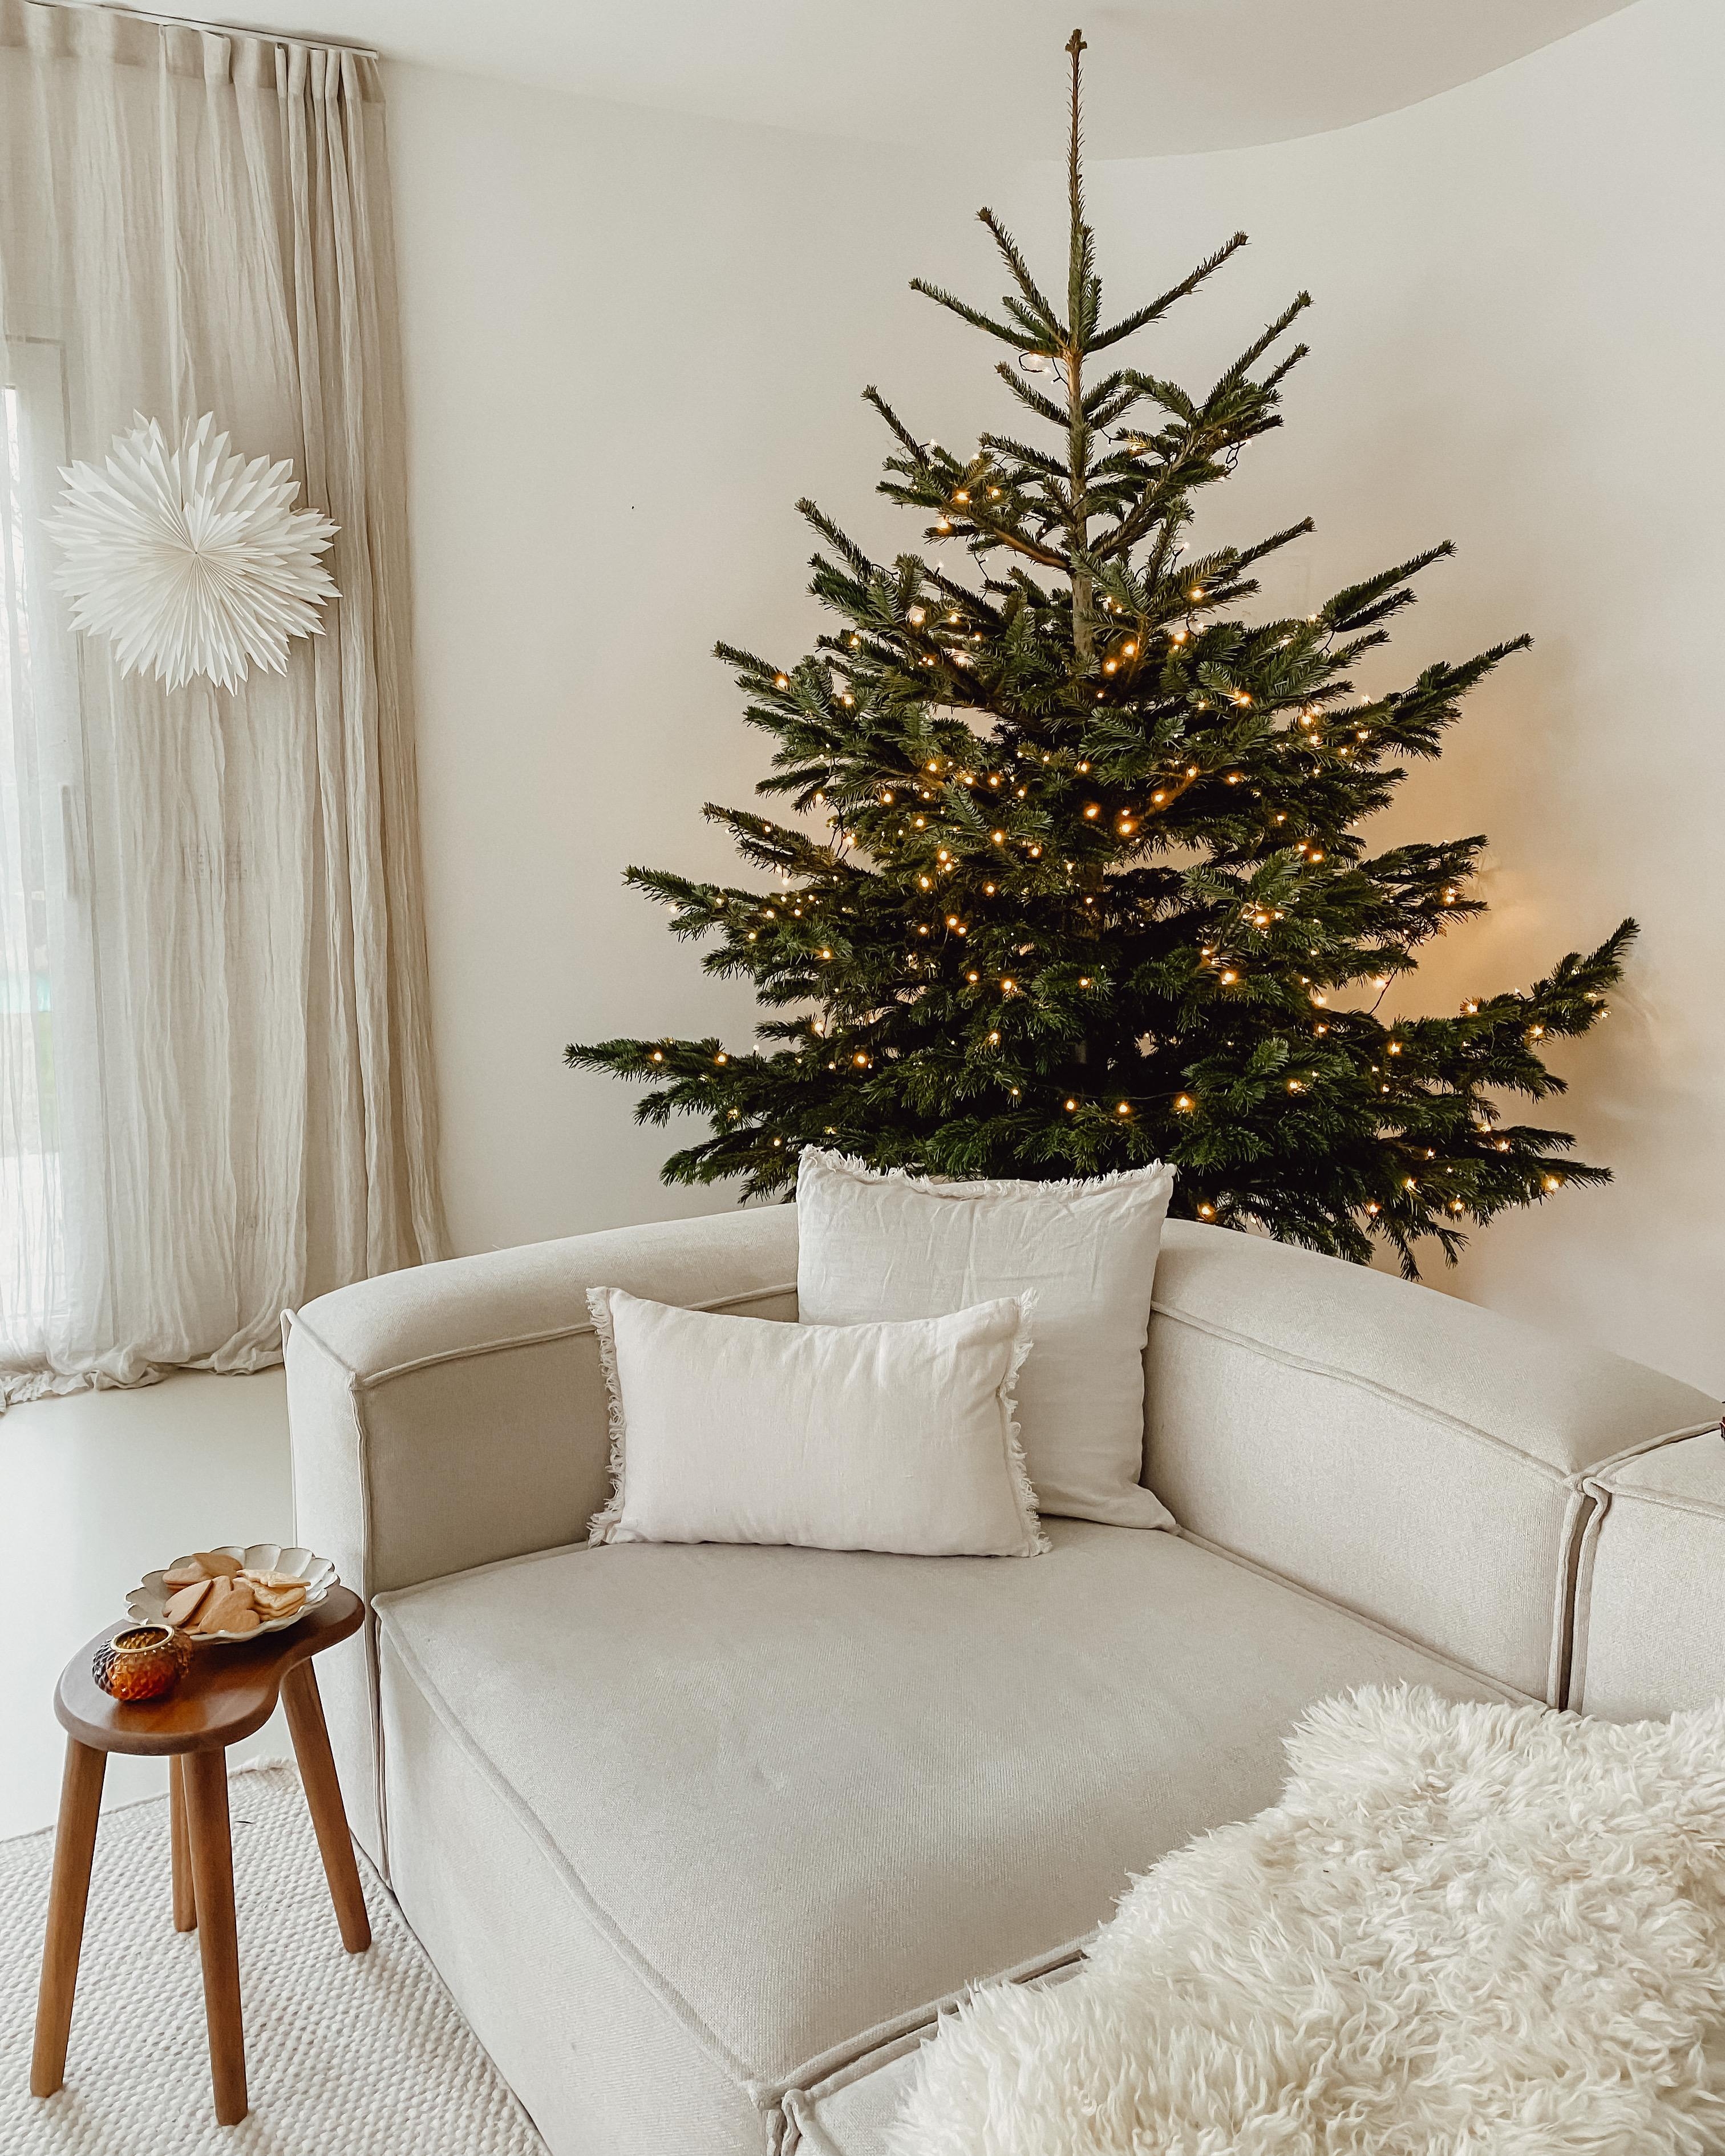 #weihnachtsbaum #weihnachtsdeko #weihnachtszeit #schlicht #minimal #beige #whiteliving #couch #wohnzimmer